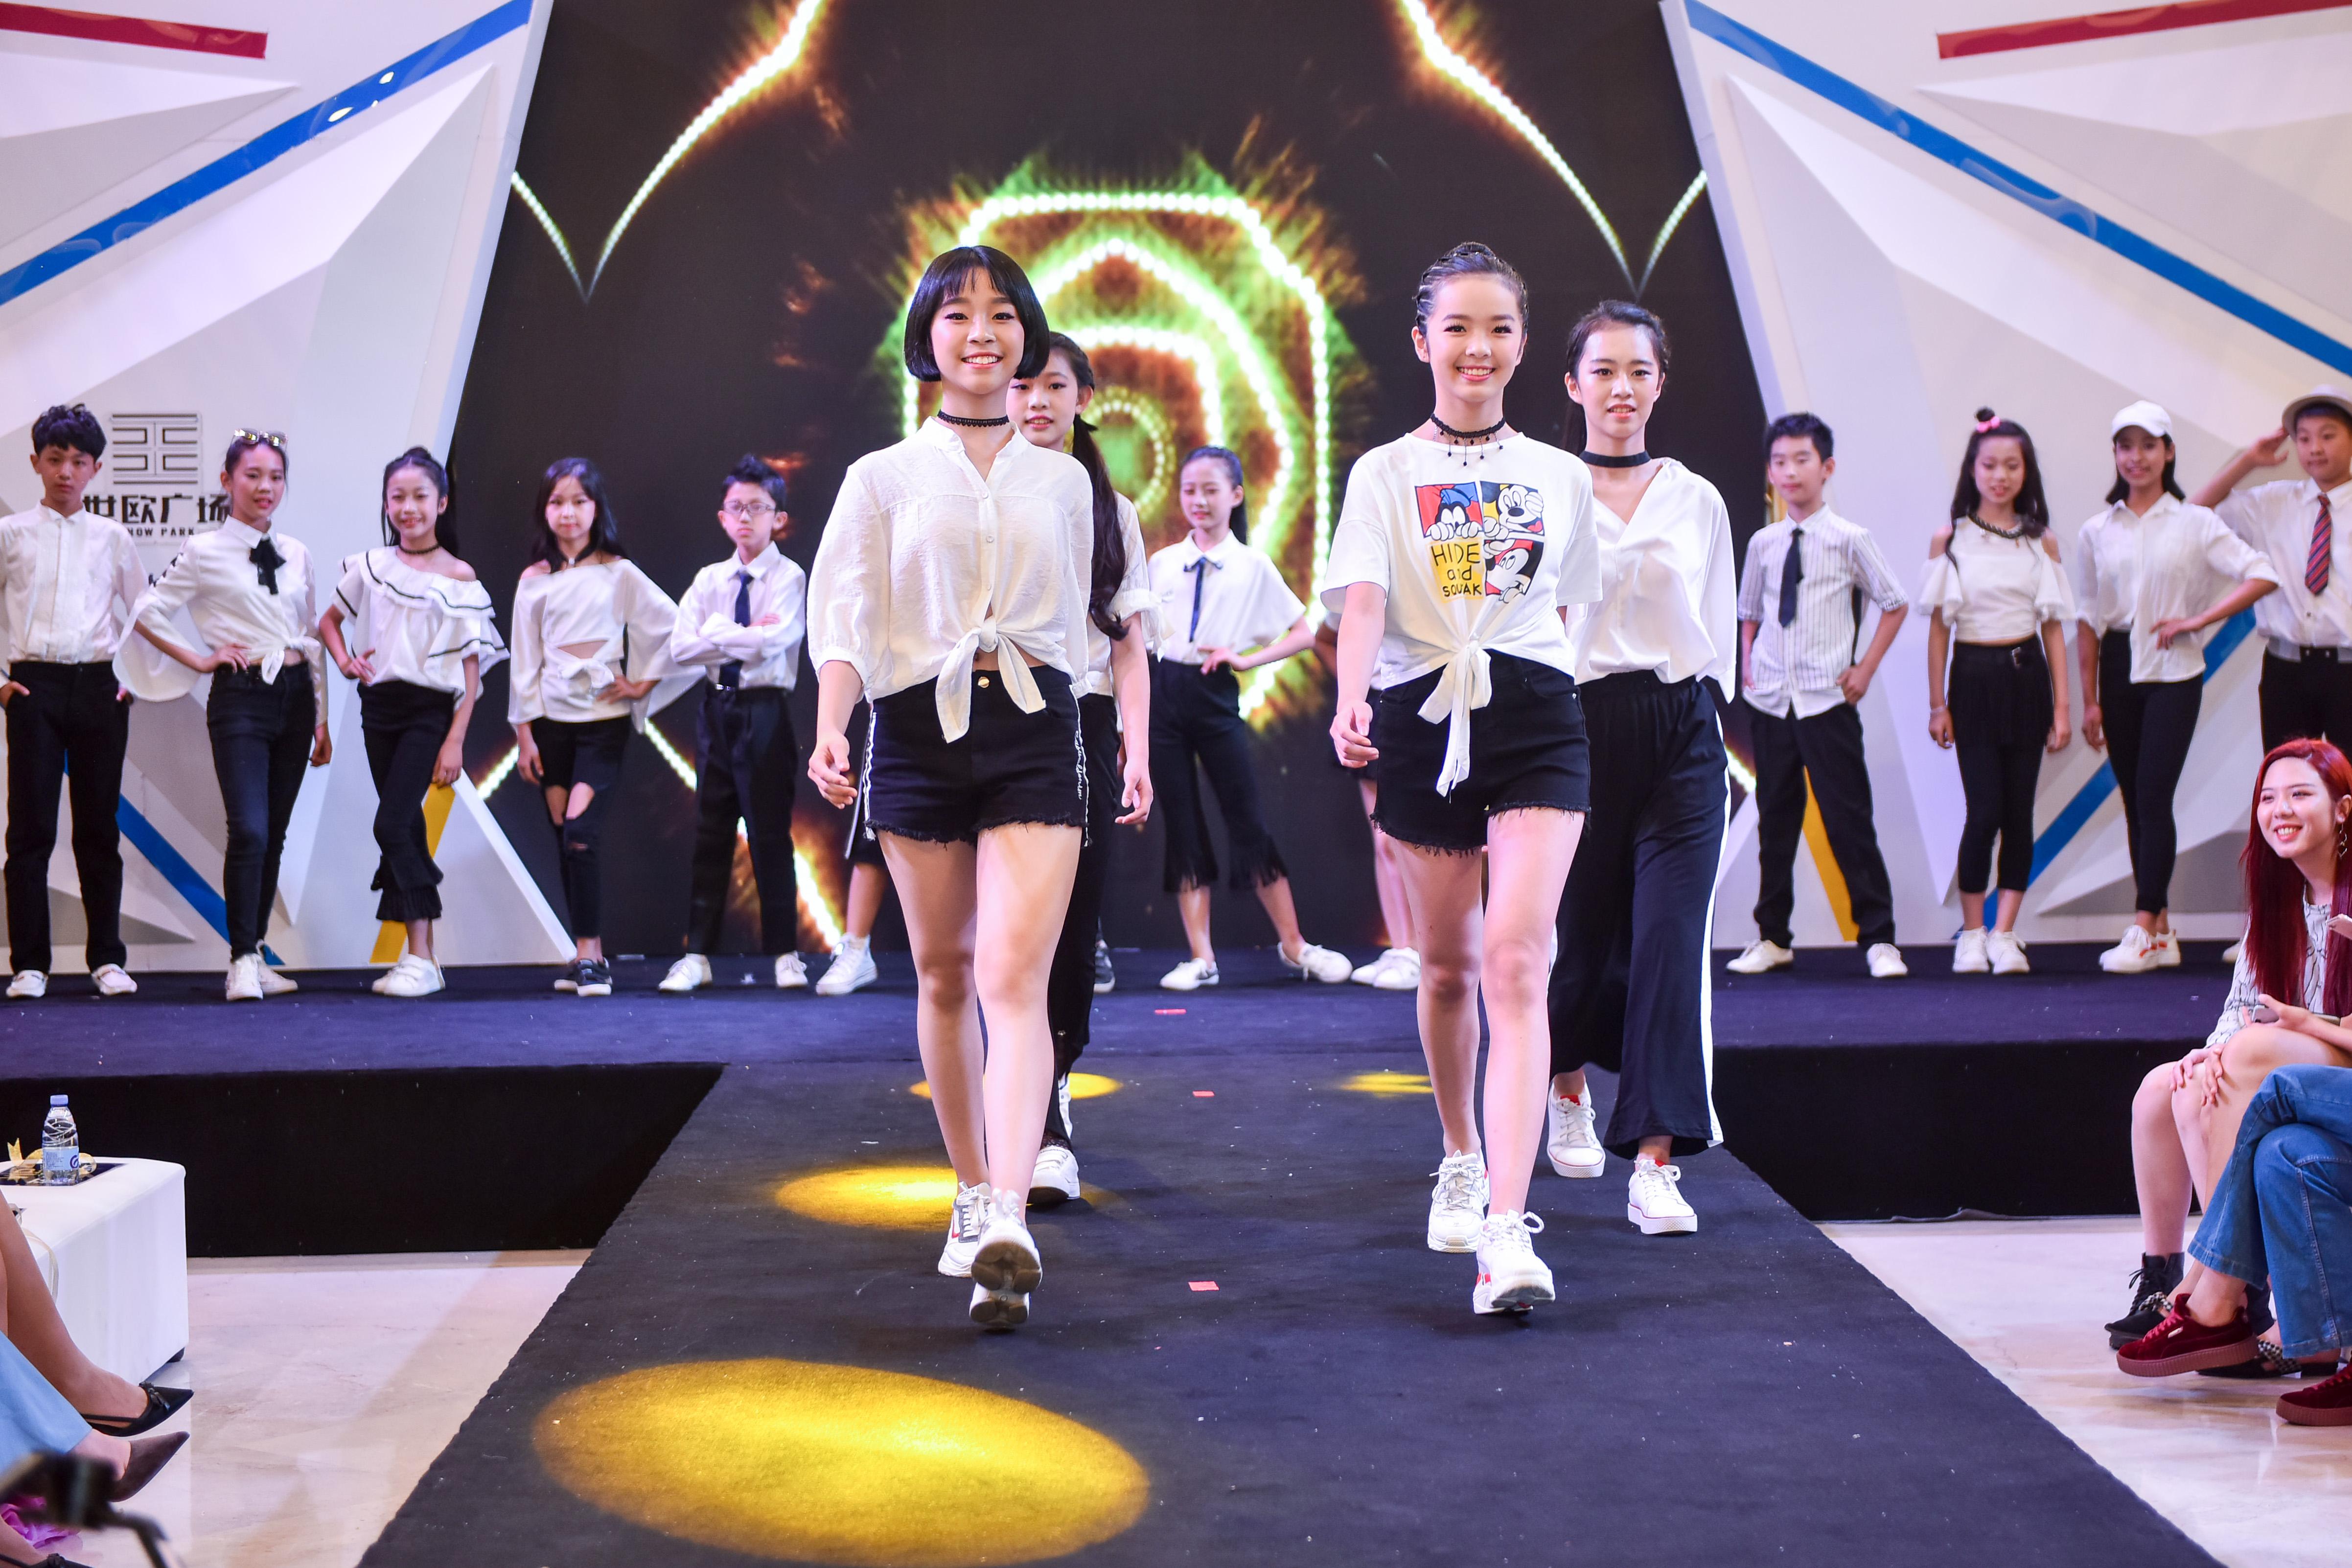 萌宝出动 | 2020武汉时装周儿童模特大赛幼儿组获奖选手展示_舞台